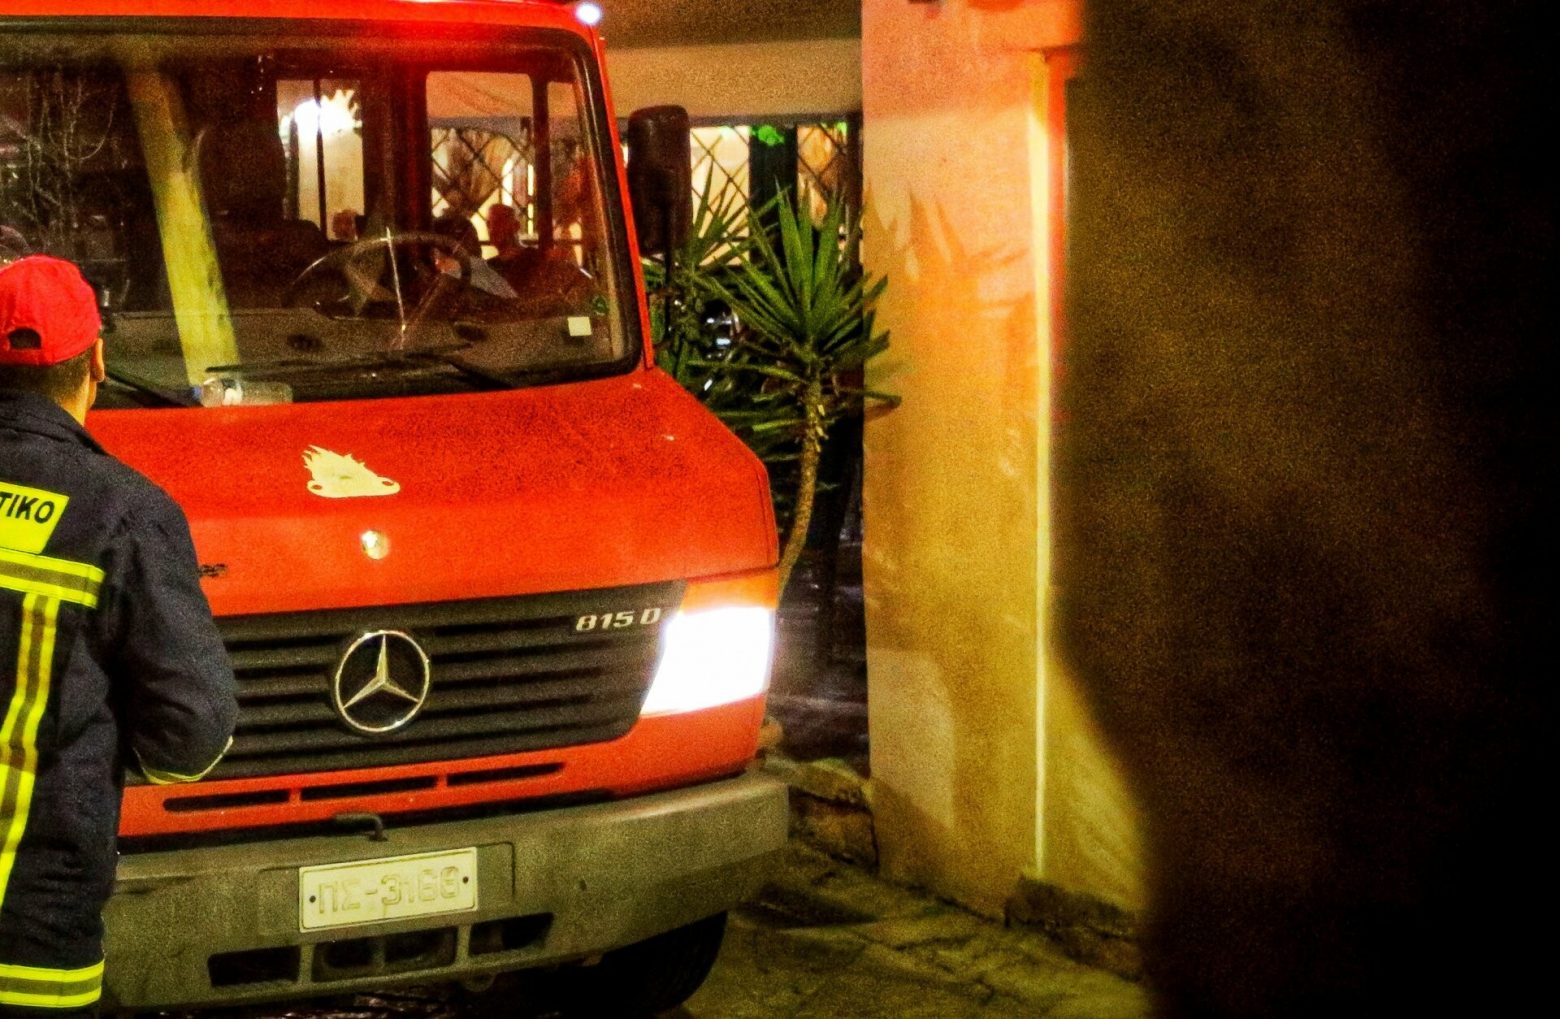 Χαλάνδρι: Πυρκαγιά σε διαμέρισμα πολυκατοικίας - Εκκενώθηκε από τους ενοίκους